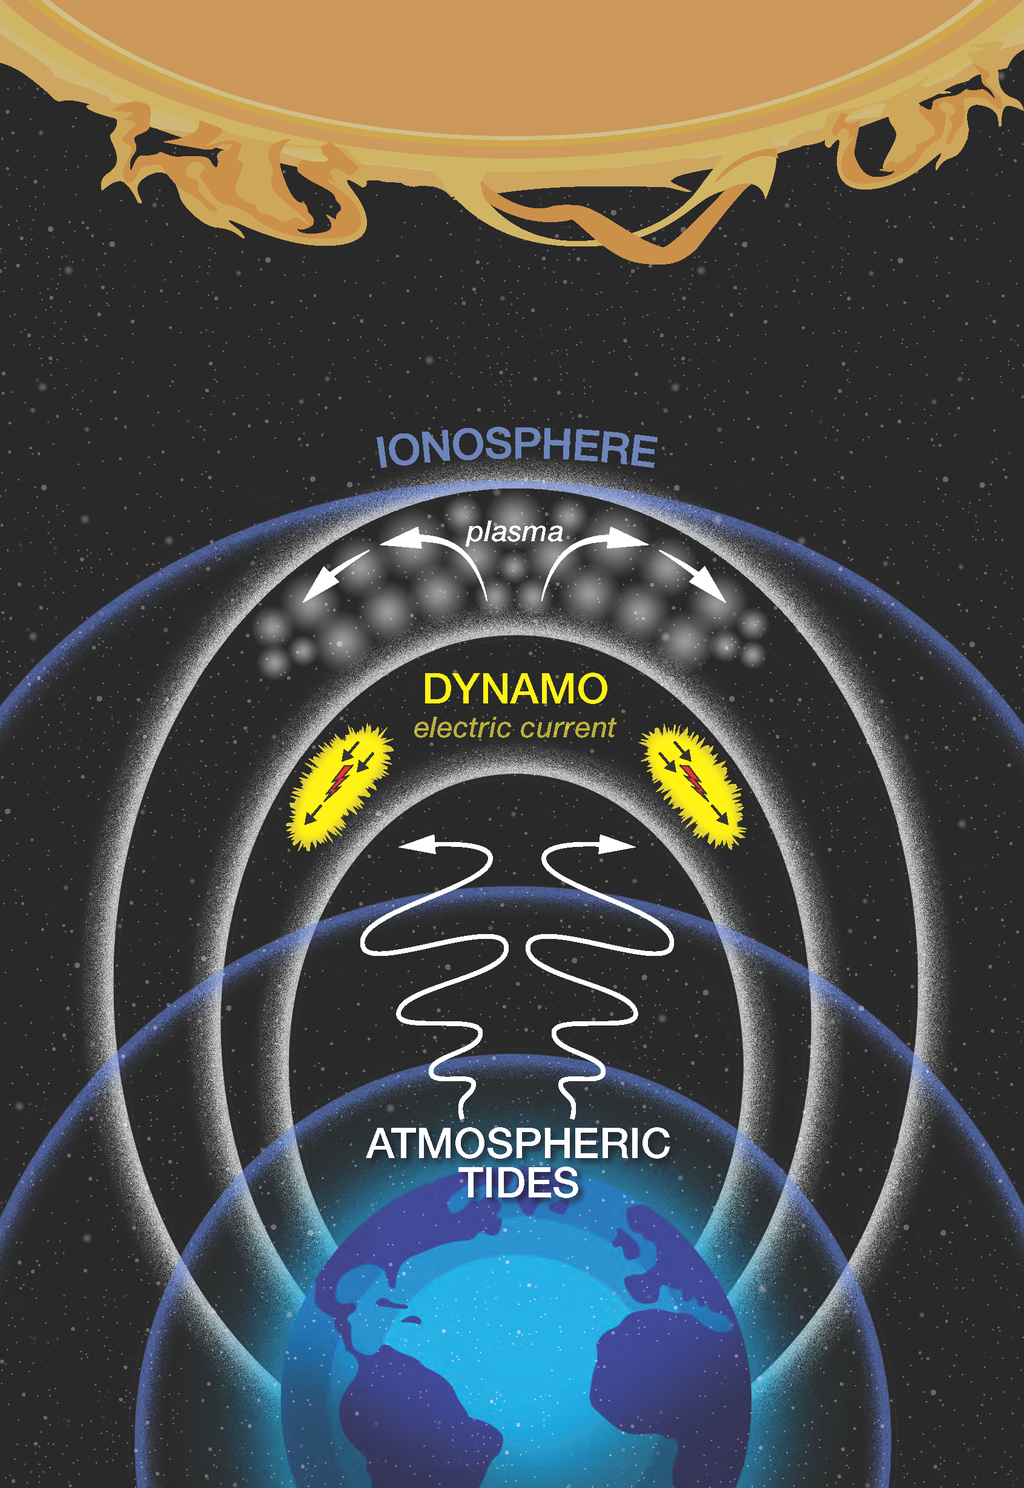 Infográfico das interações entre ventos da atmosfera baixa, plasma da ionosfera e ventos solares, que resultam em um dínamo (Imagem: Reprodução/NASA/Mary P. Hrybyk-Keith)